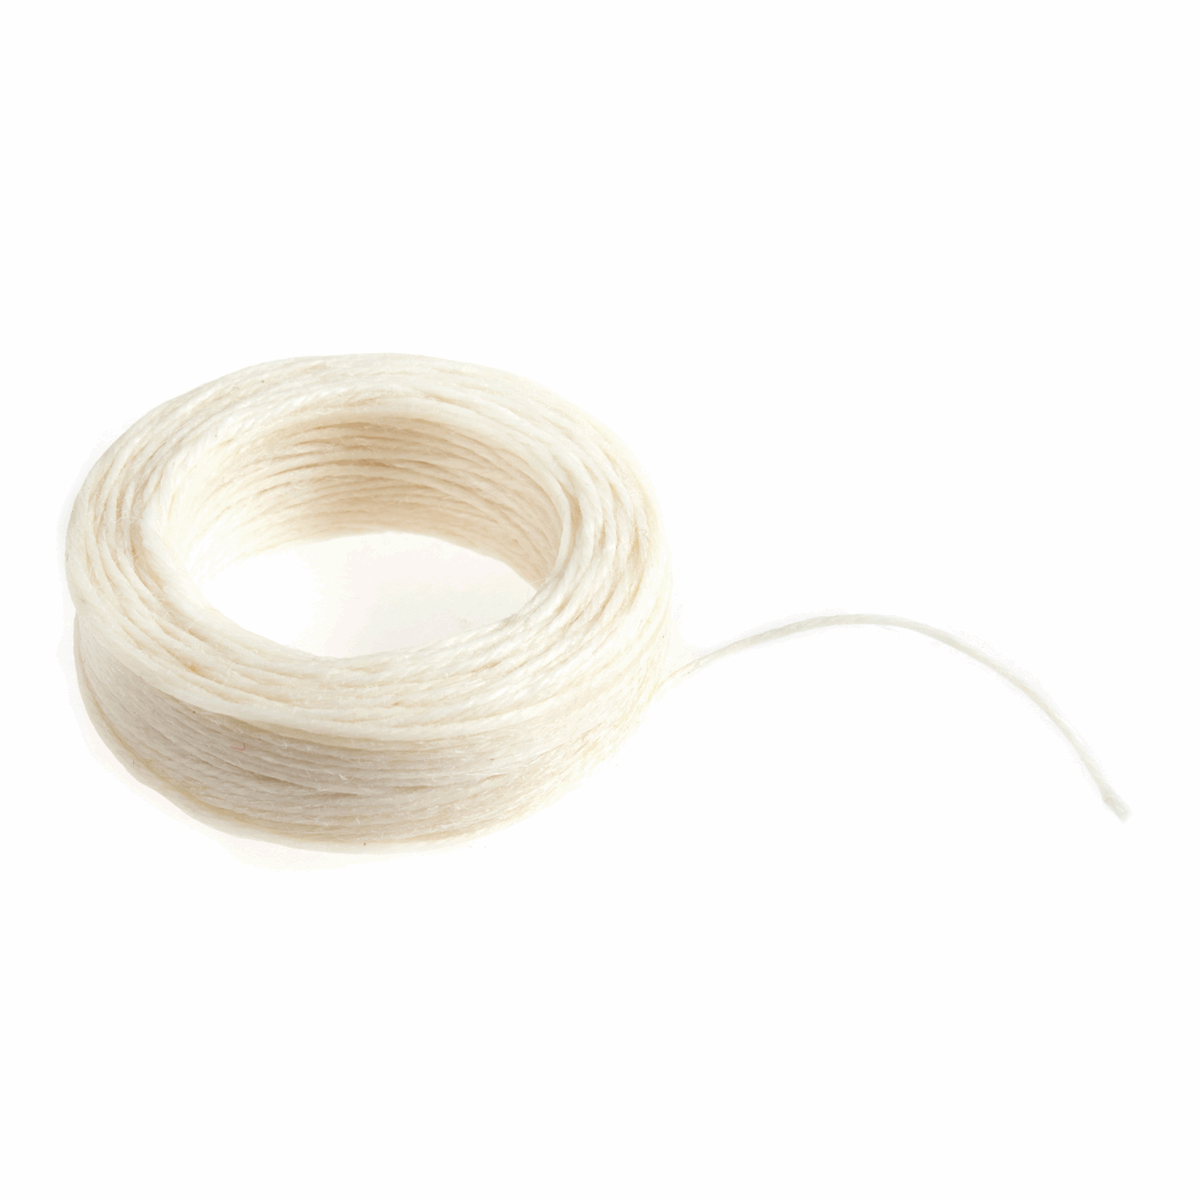 Trimits White Waxed Thread - 22m